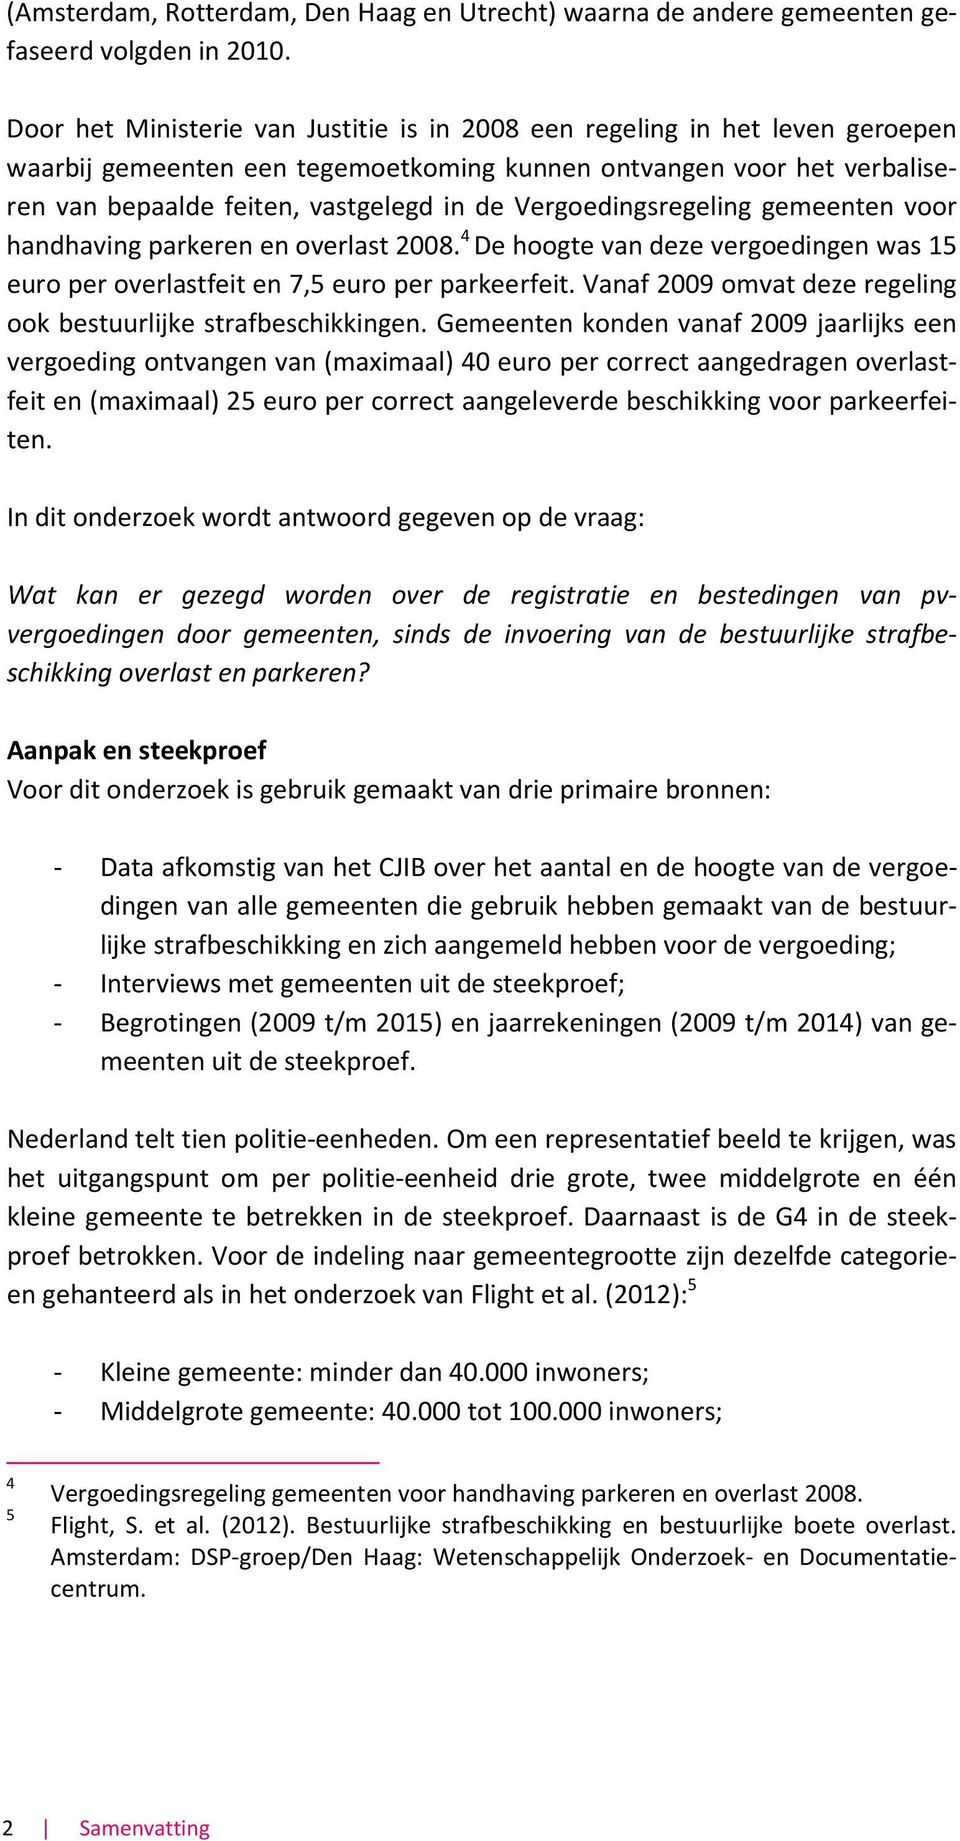 Vergoedingsregeling gemeenten voor handhaving parkeren en overlast 2008. 4 De hoogte van deze vergoedingen was 15 euro per overlastfeit en 7,5 euro per parkeerfeit.